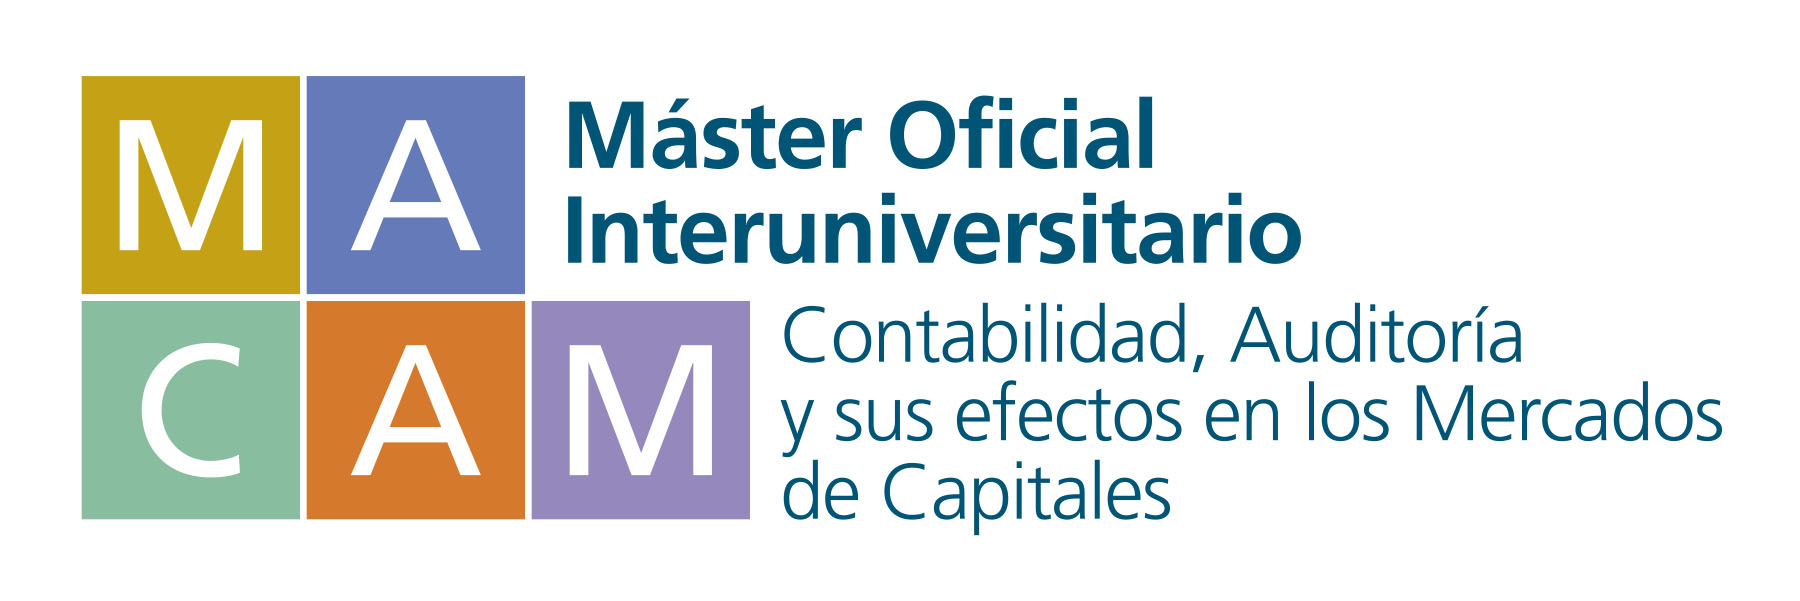 Master Oficial en Contabilidad, Auditoría y Mercados de Capitales